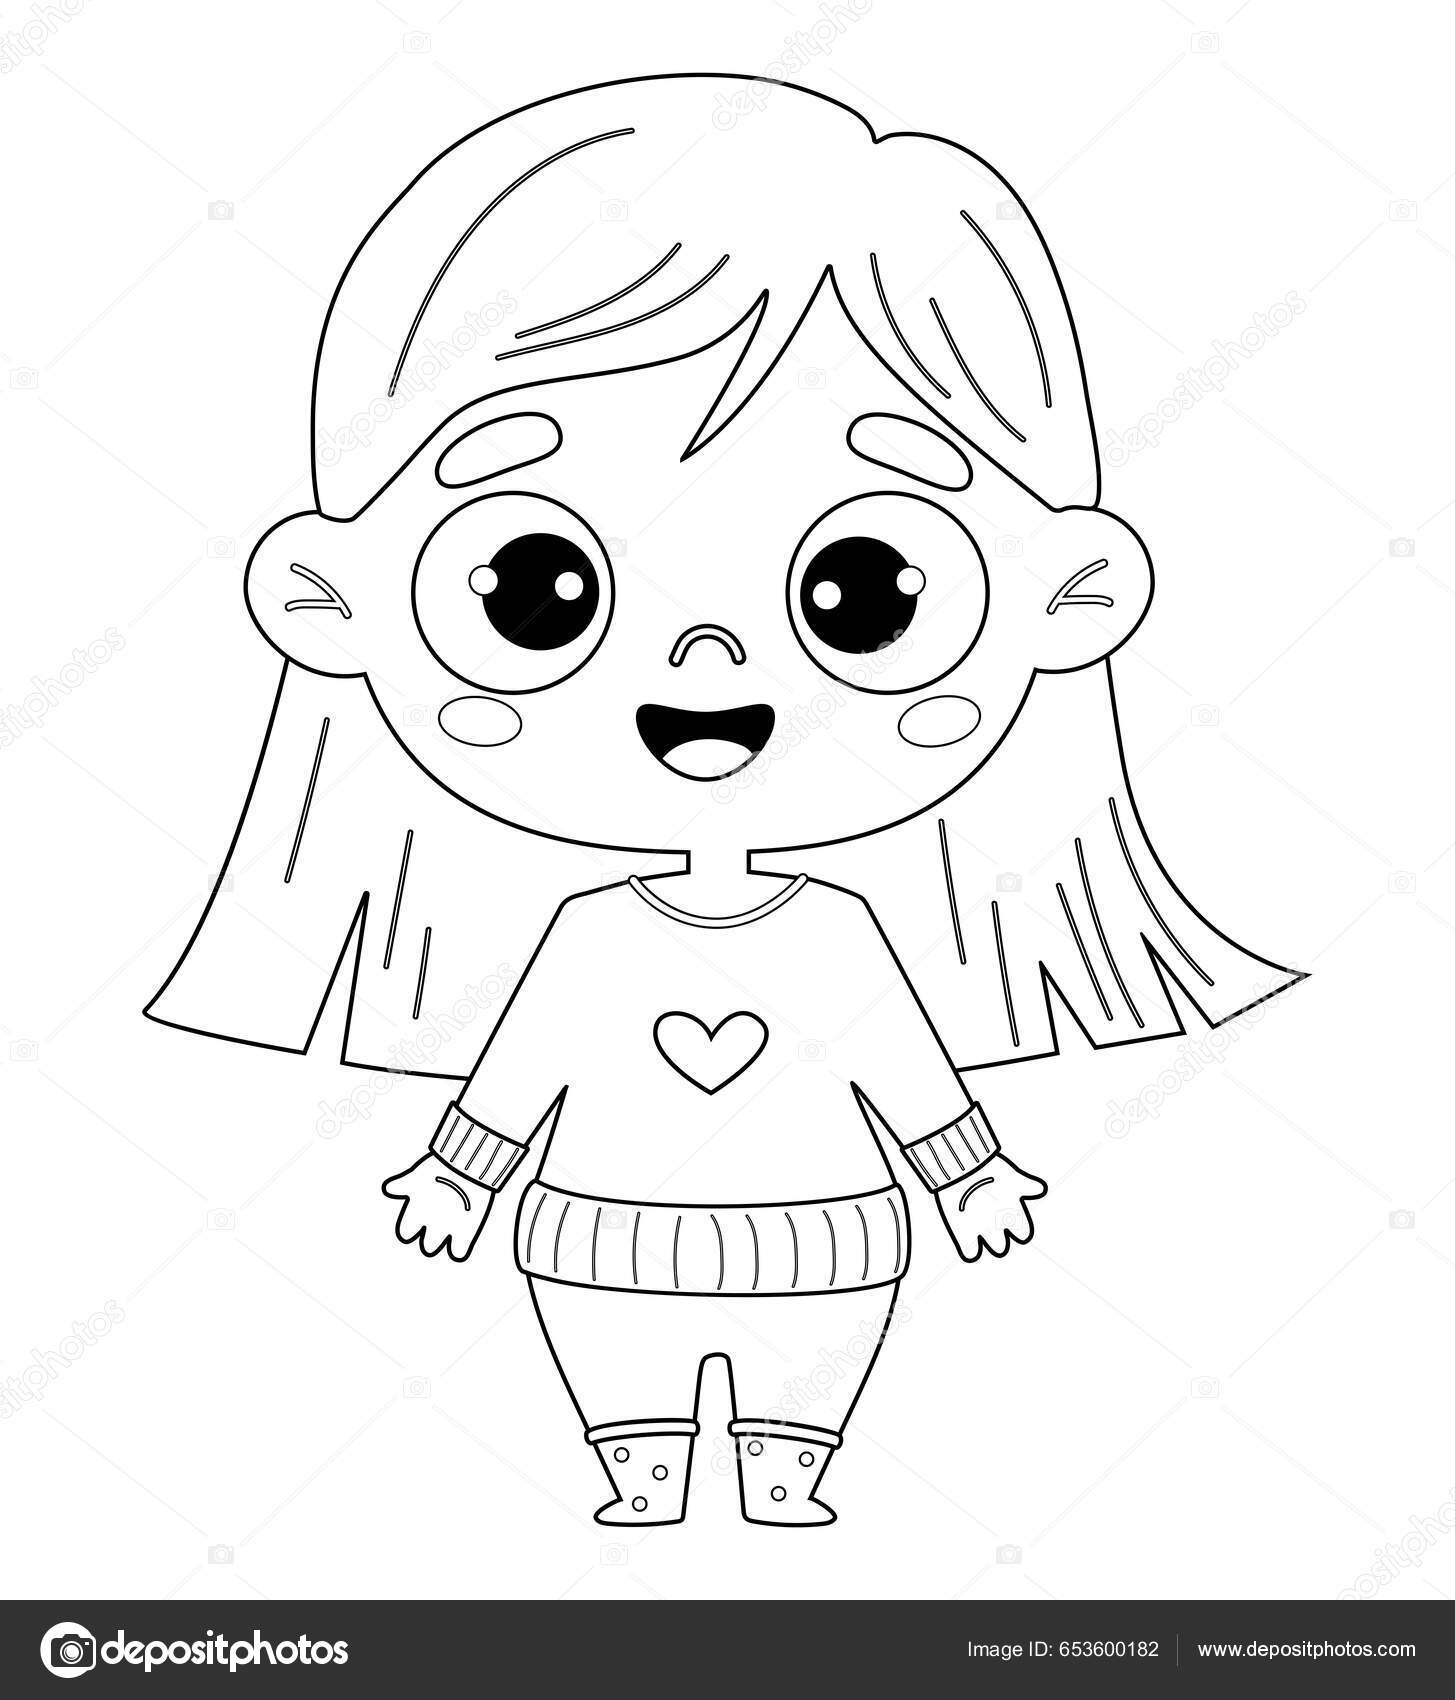 https://st5.depositphotos.com/35798576/65360/v/1600/depositphotos_653600182-stock-illustration-cute-happy-kid-girl-outline.jpg